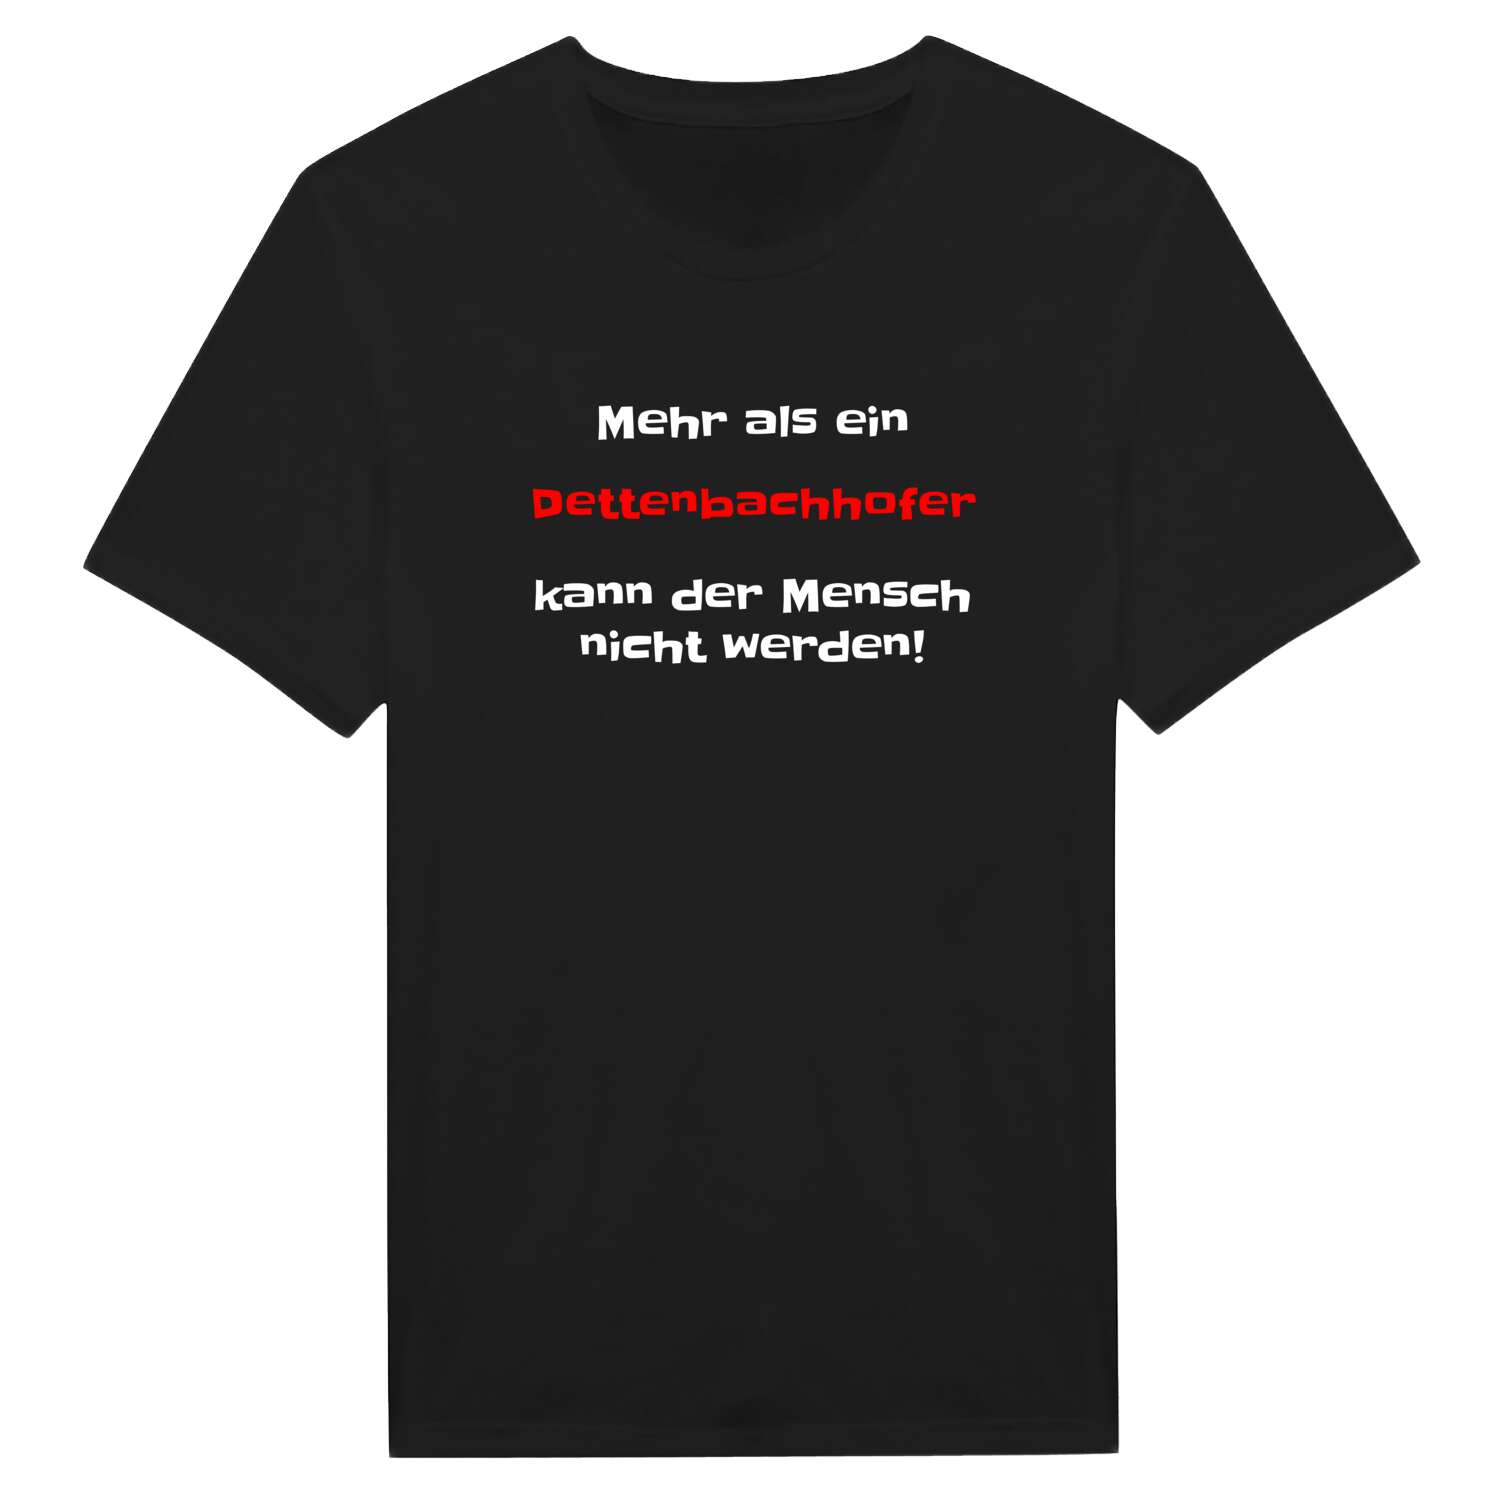 Dettenbachhof T-Shirt »Mehr als ein«